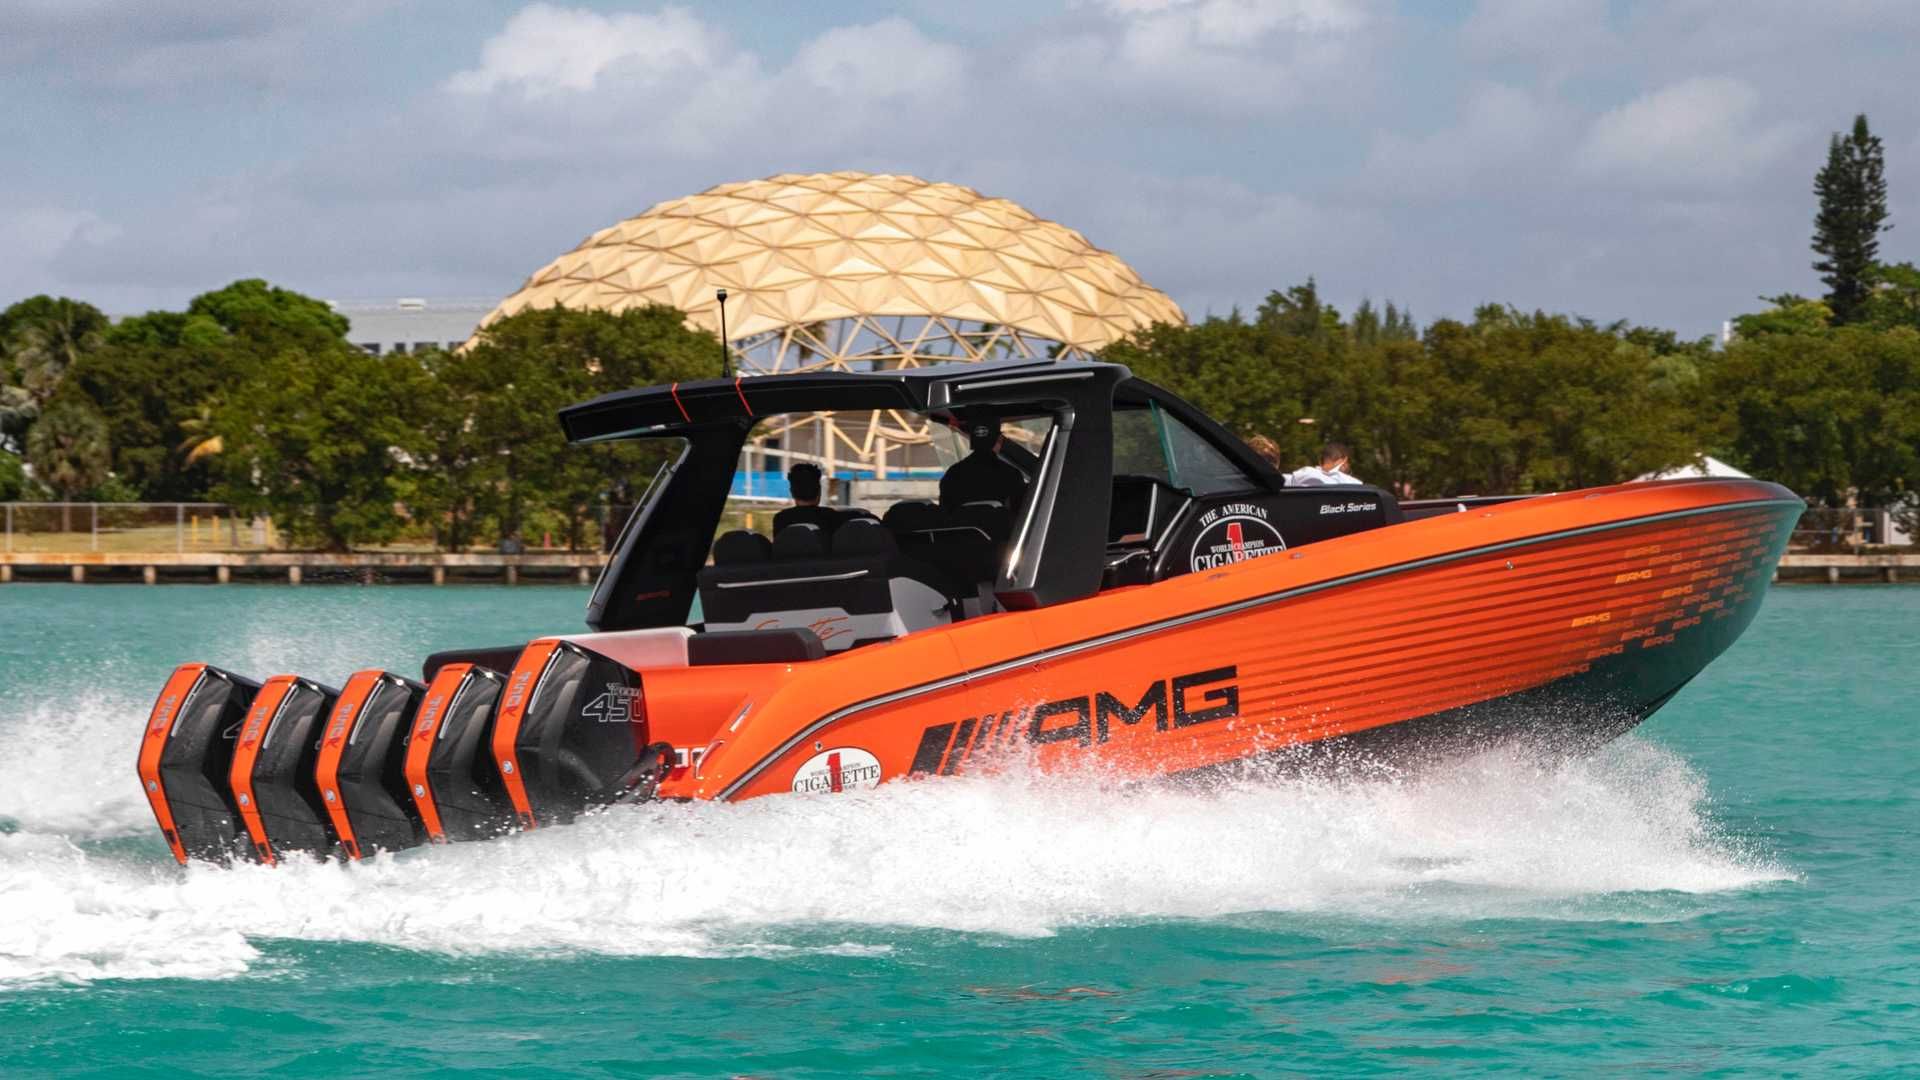 نمای عقب قایق پرسرعت مرسدس آ ام گ نایت هاوک سری سیاه / Mercedes-AMG Black Series Cigarette Boat نارنجی رنگ در دریا